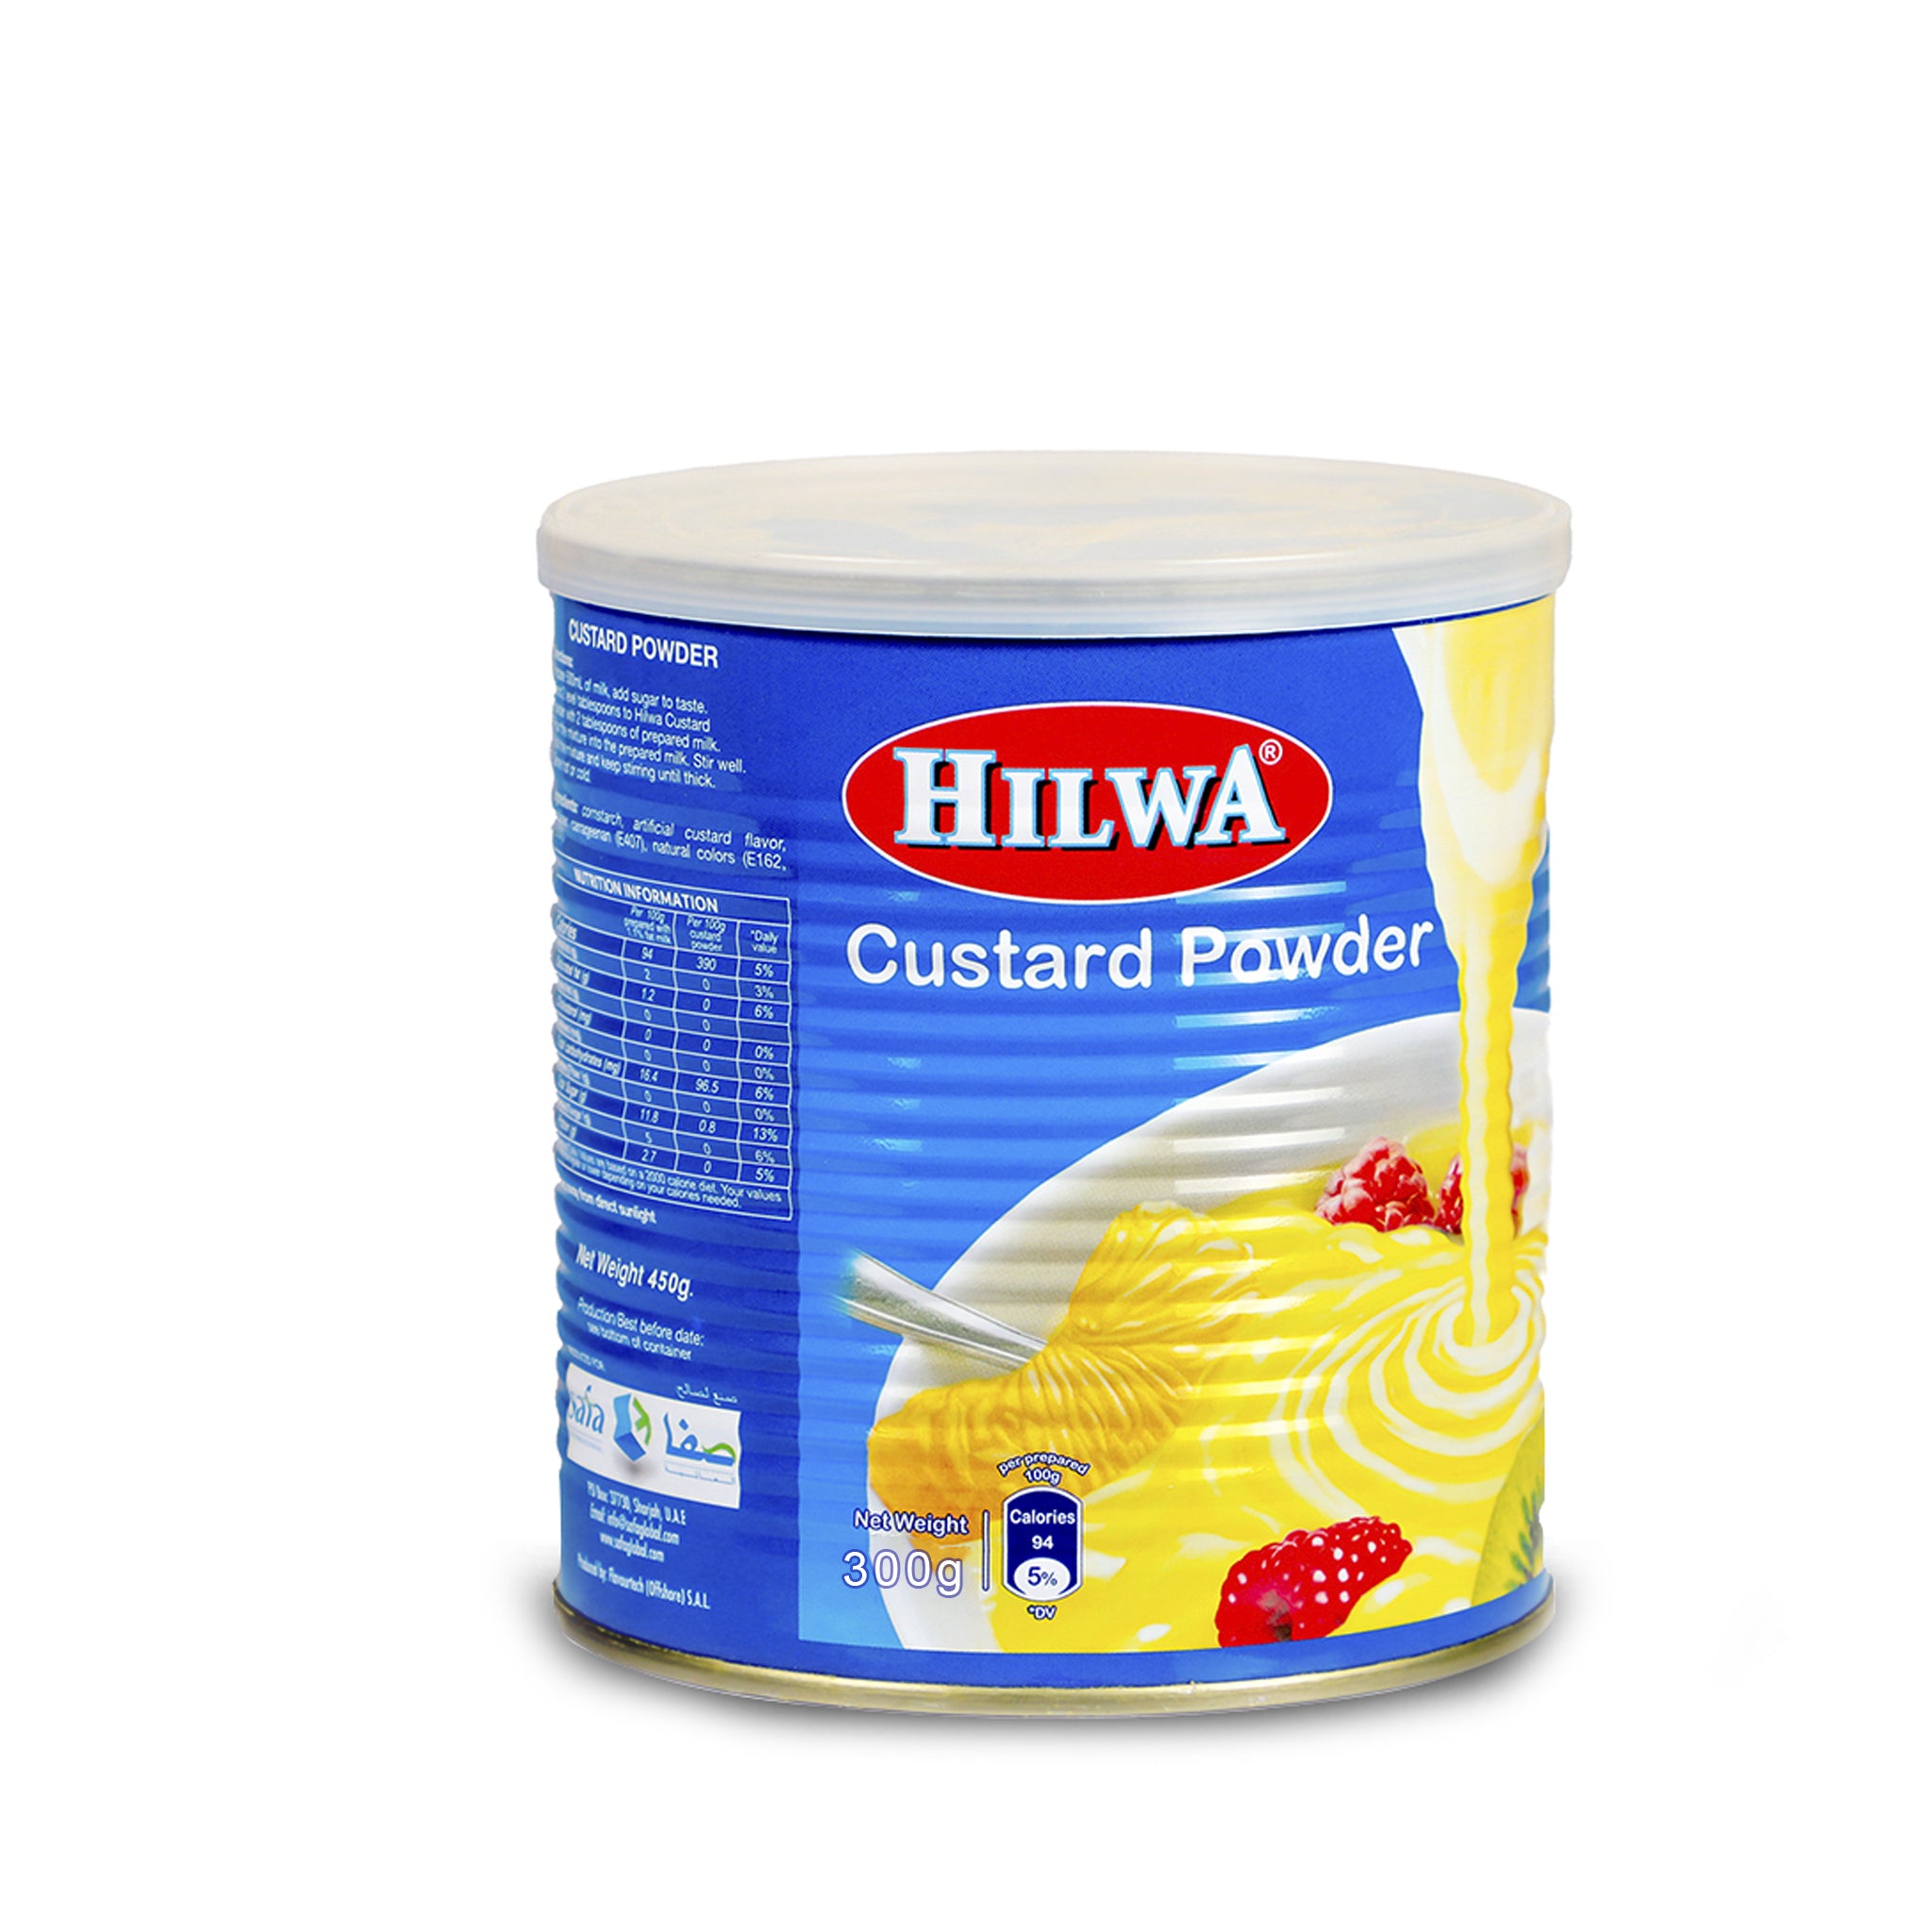 Hilwa Custard Powder 300G